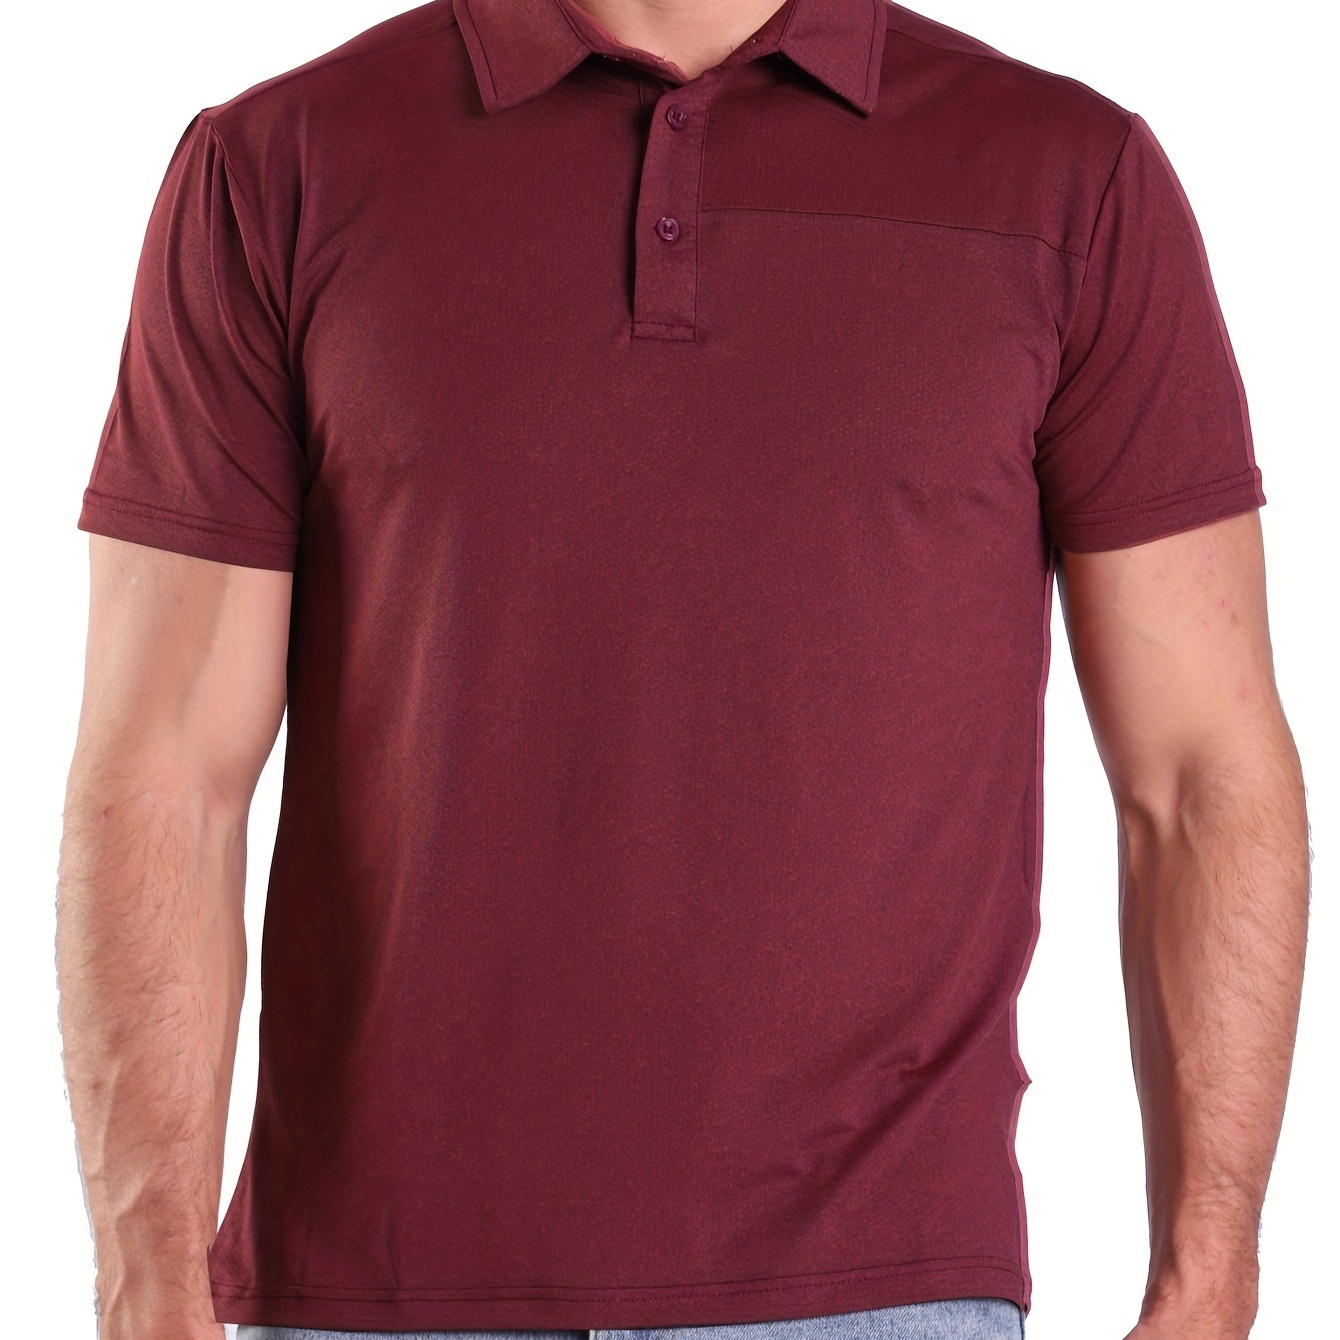 

Cotton Blend Men's Solid Lightweight Casual Short Sleeve Lapel Golf Shirt For Summer Outdoor